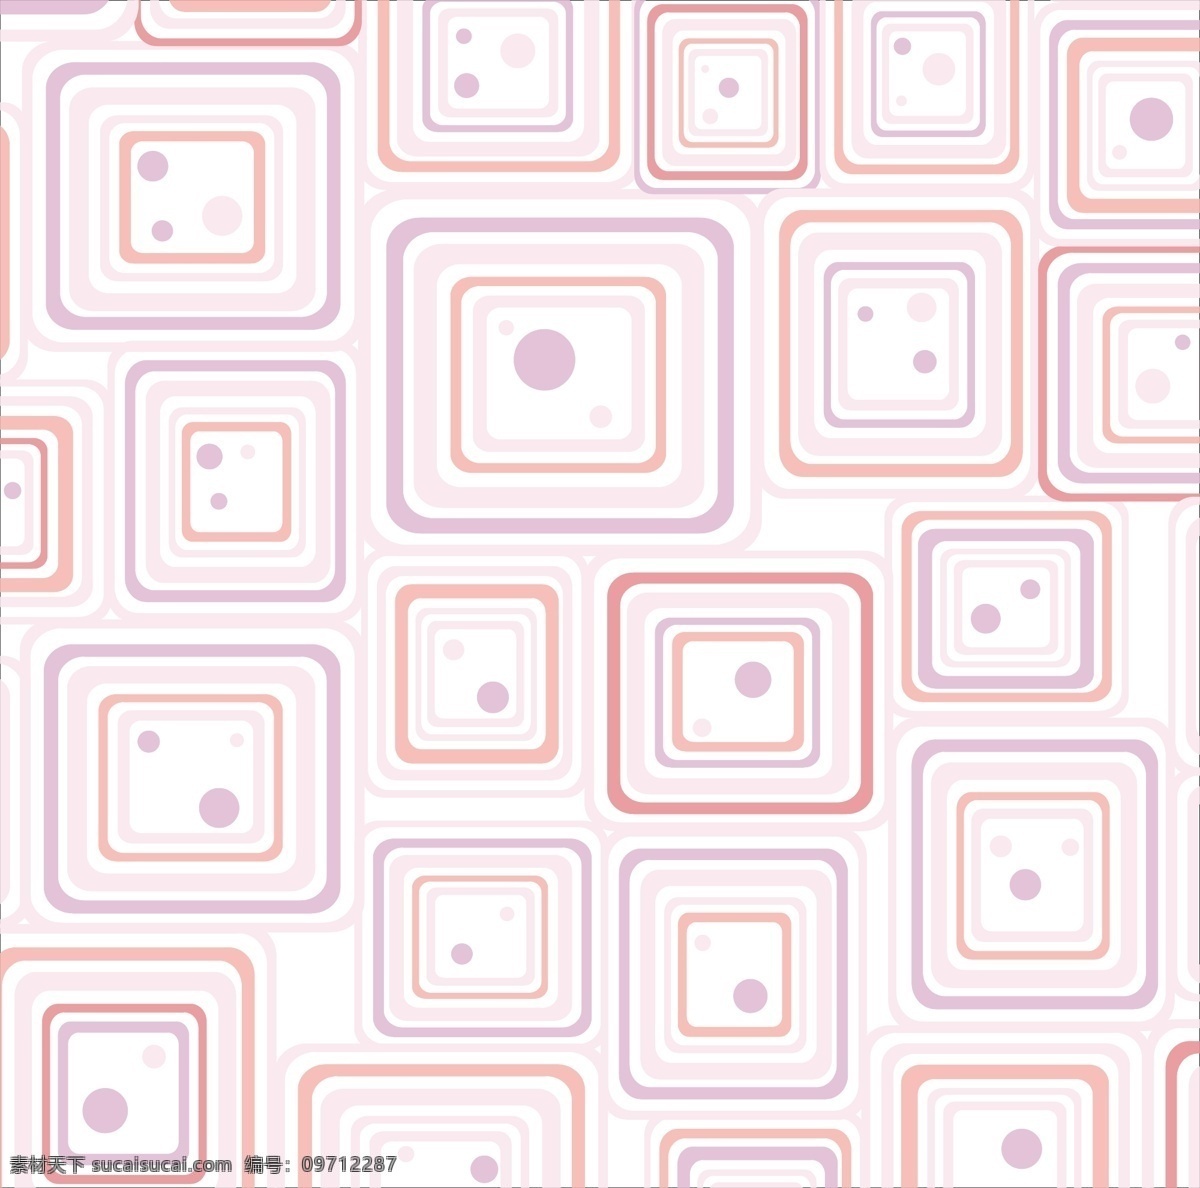 方形矢量素材 粉色 方形 填充 矢量背景 广告背景